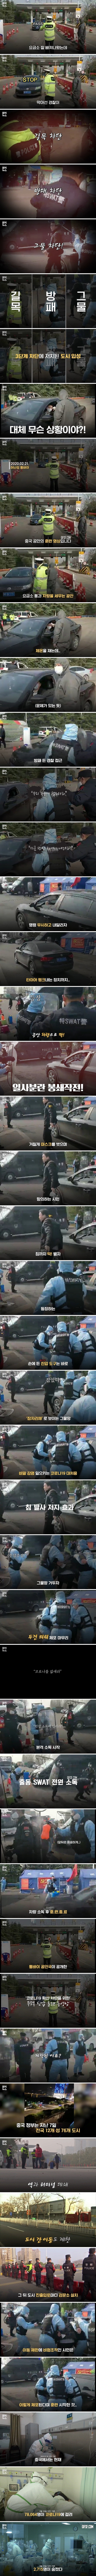 코로나19 검문 불응자 체포 훈련영상 공개한 중국 퉁바이 공안국.jpg